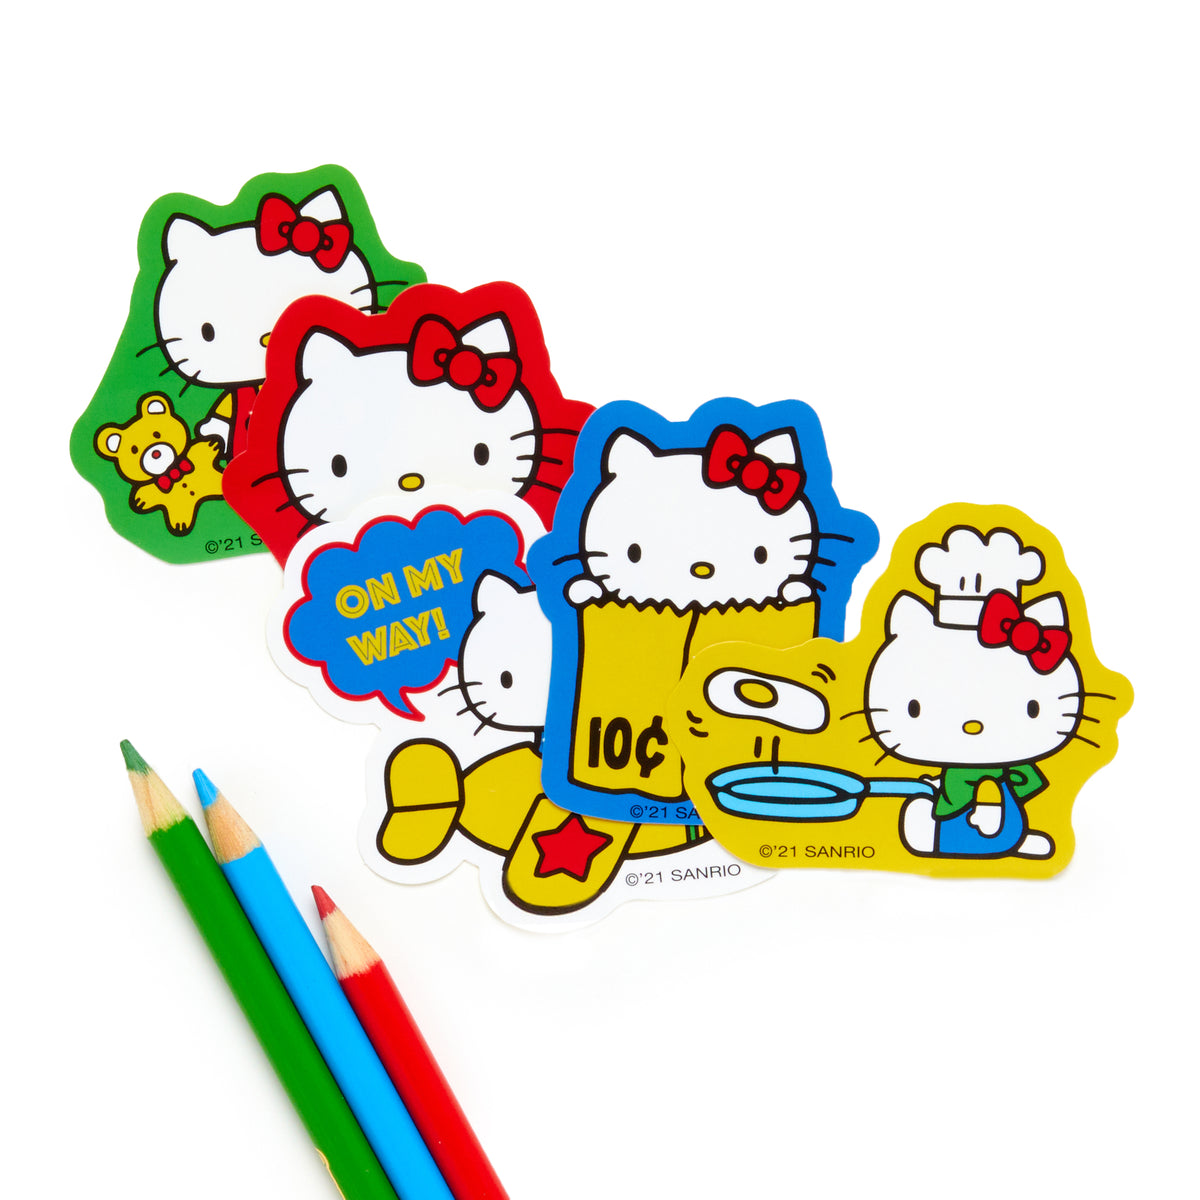 Hello Kitty Sayings Big Sticker Pack Stationery HUNET USA   